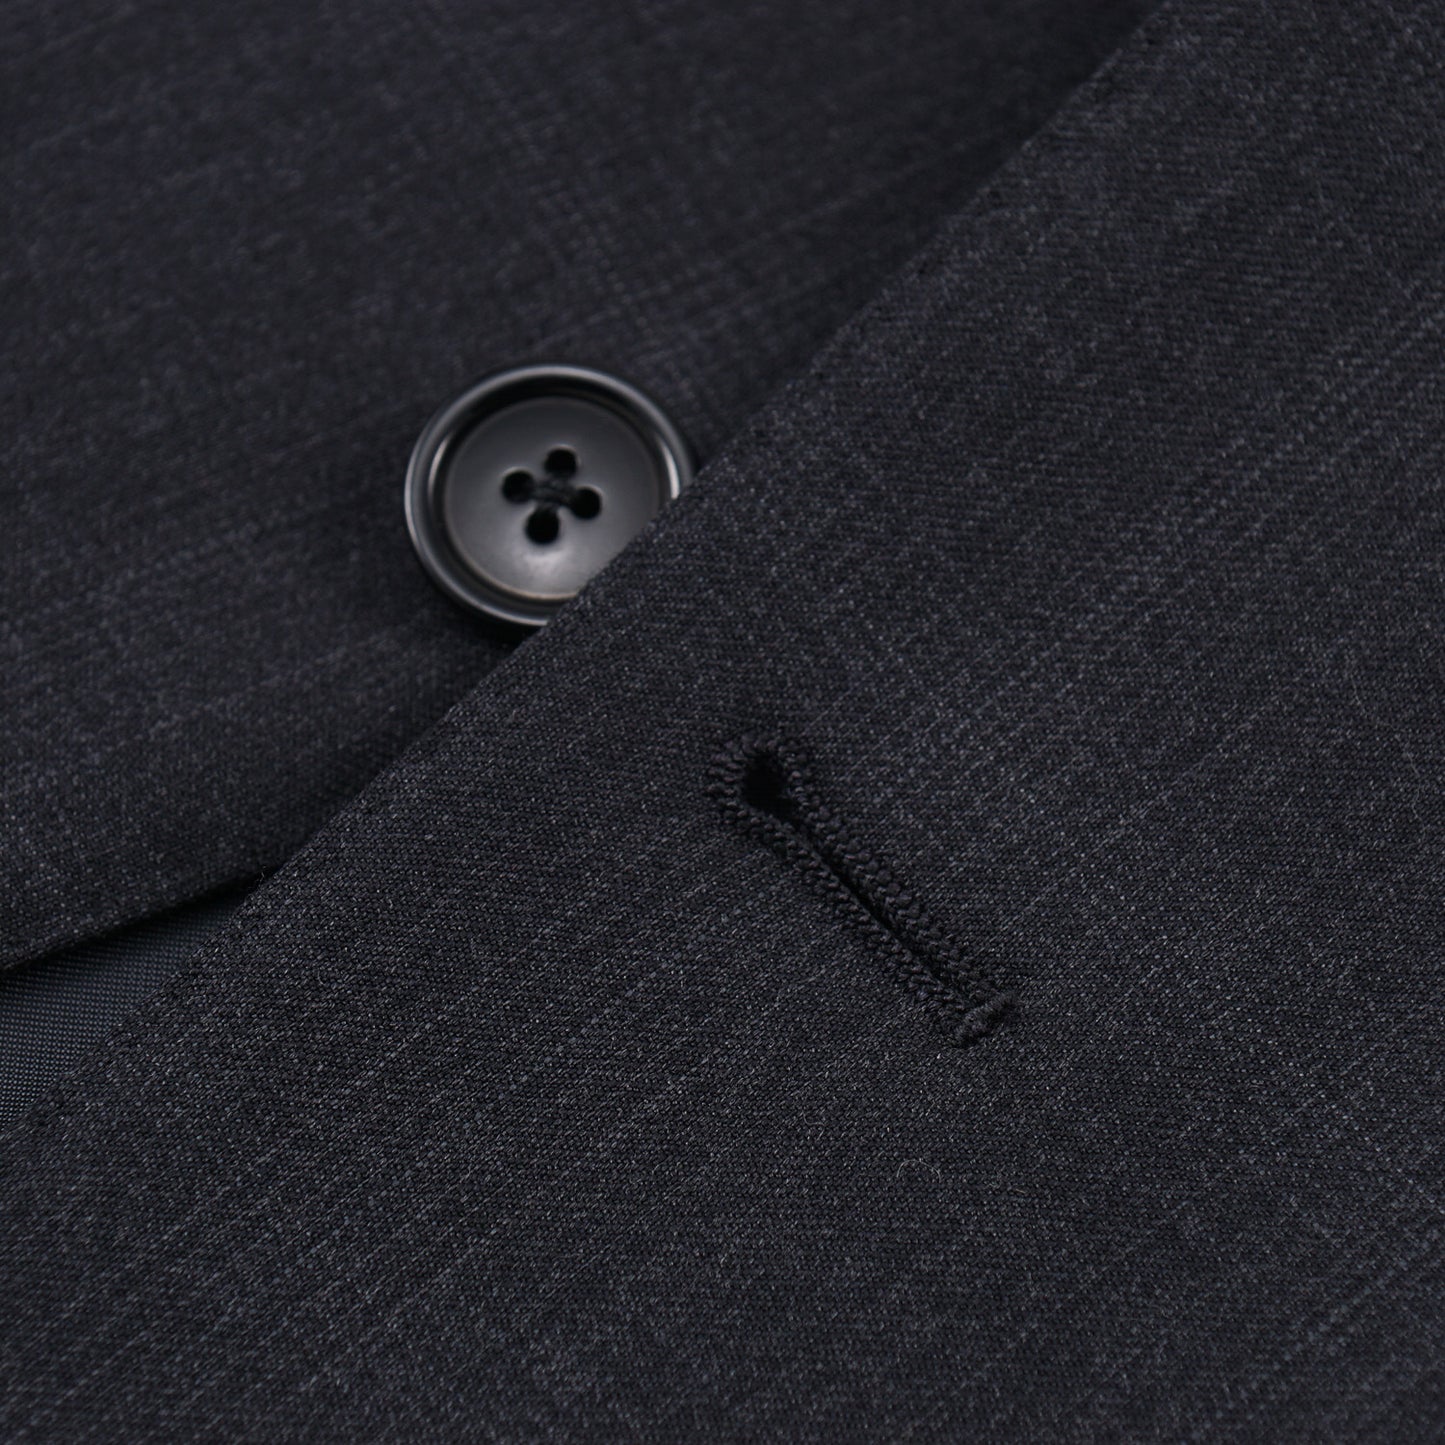 Ermenegildo Zegna 'Multiseason' Wool Suit - Top Shelf Apparel